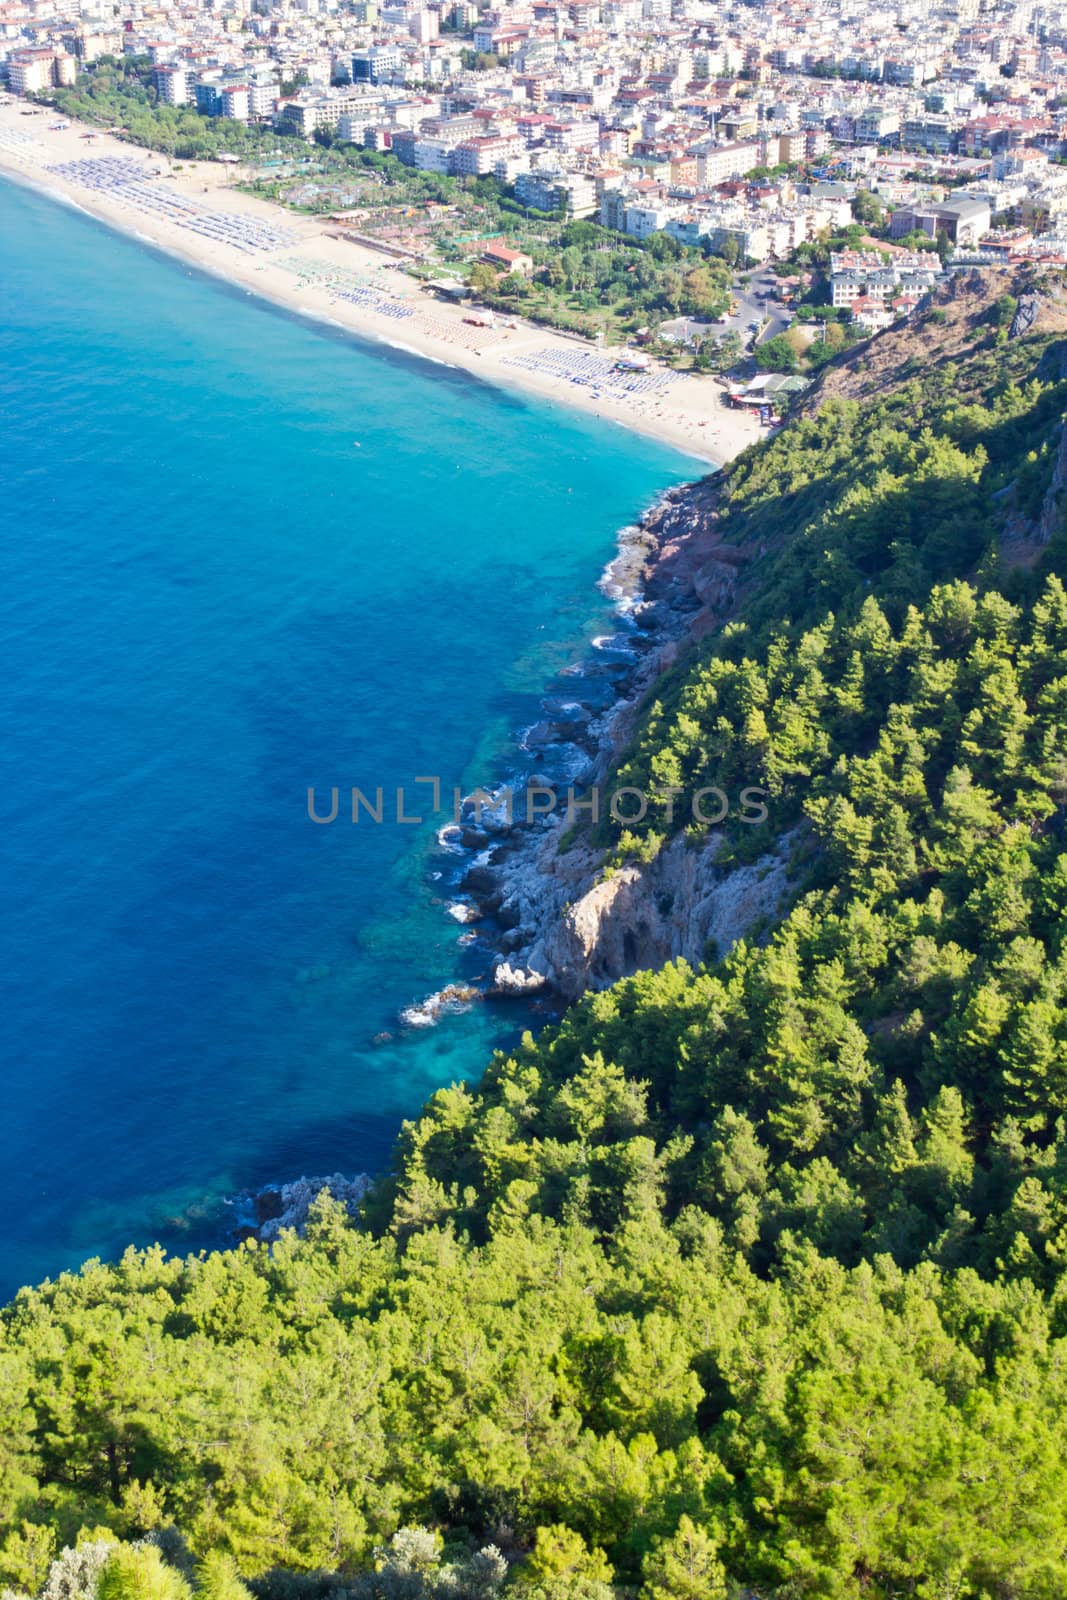 Alania seaside with blue sea